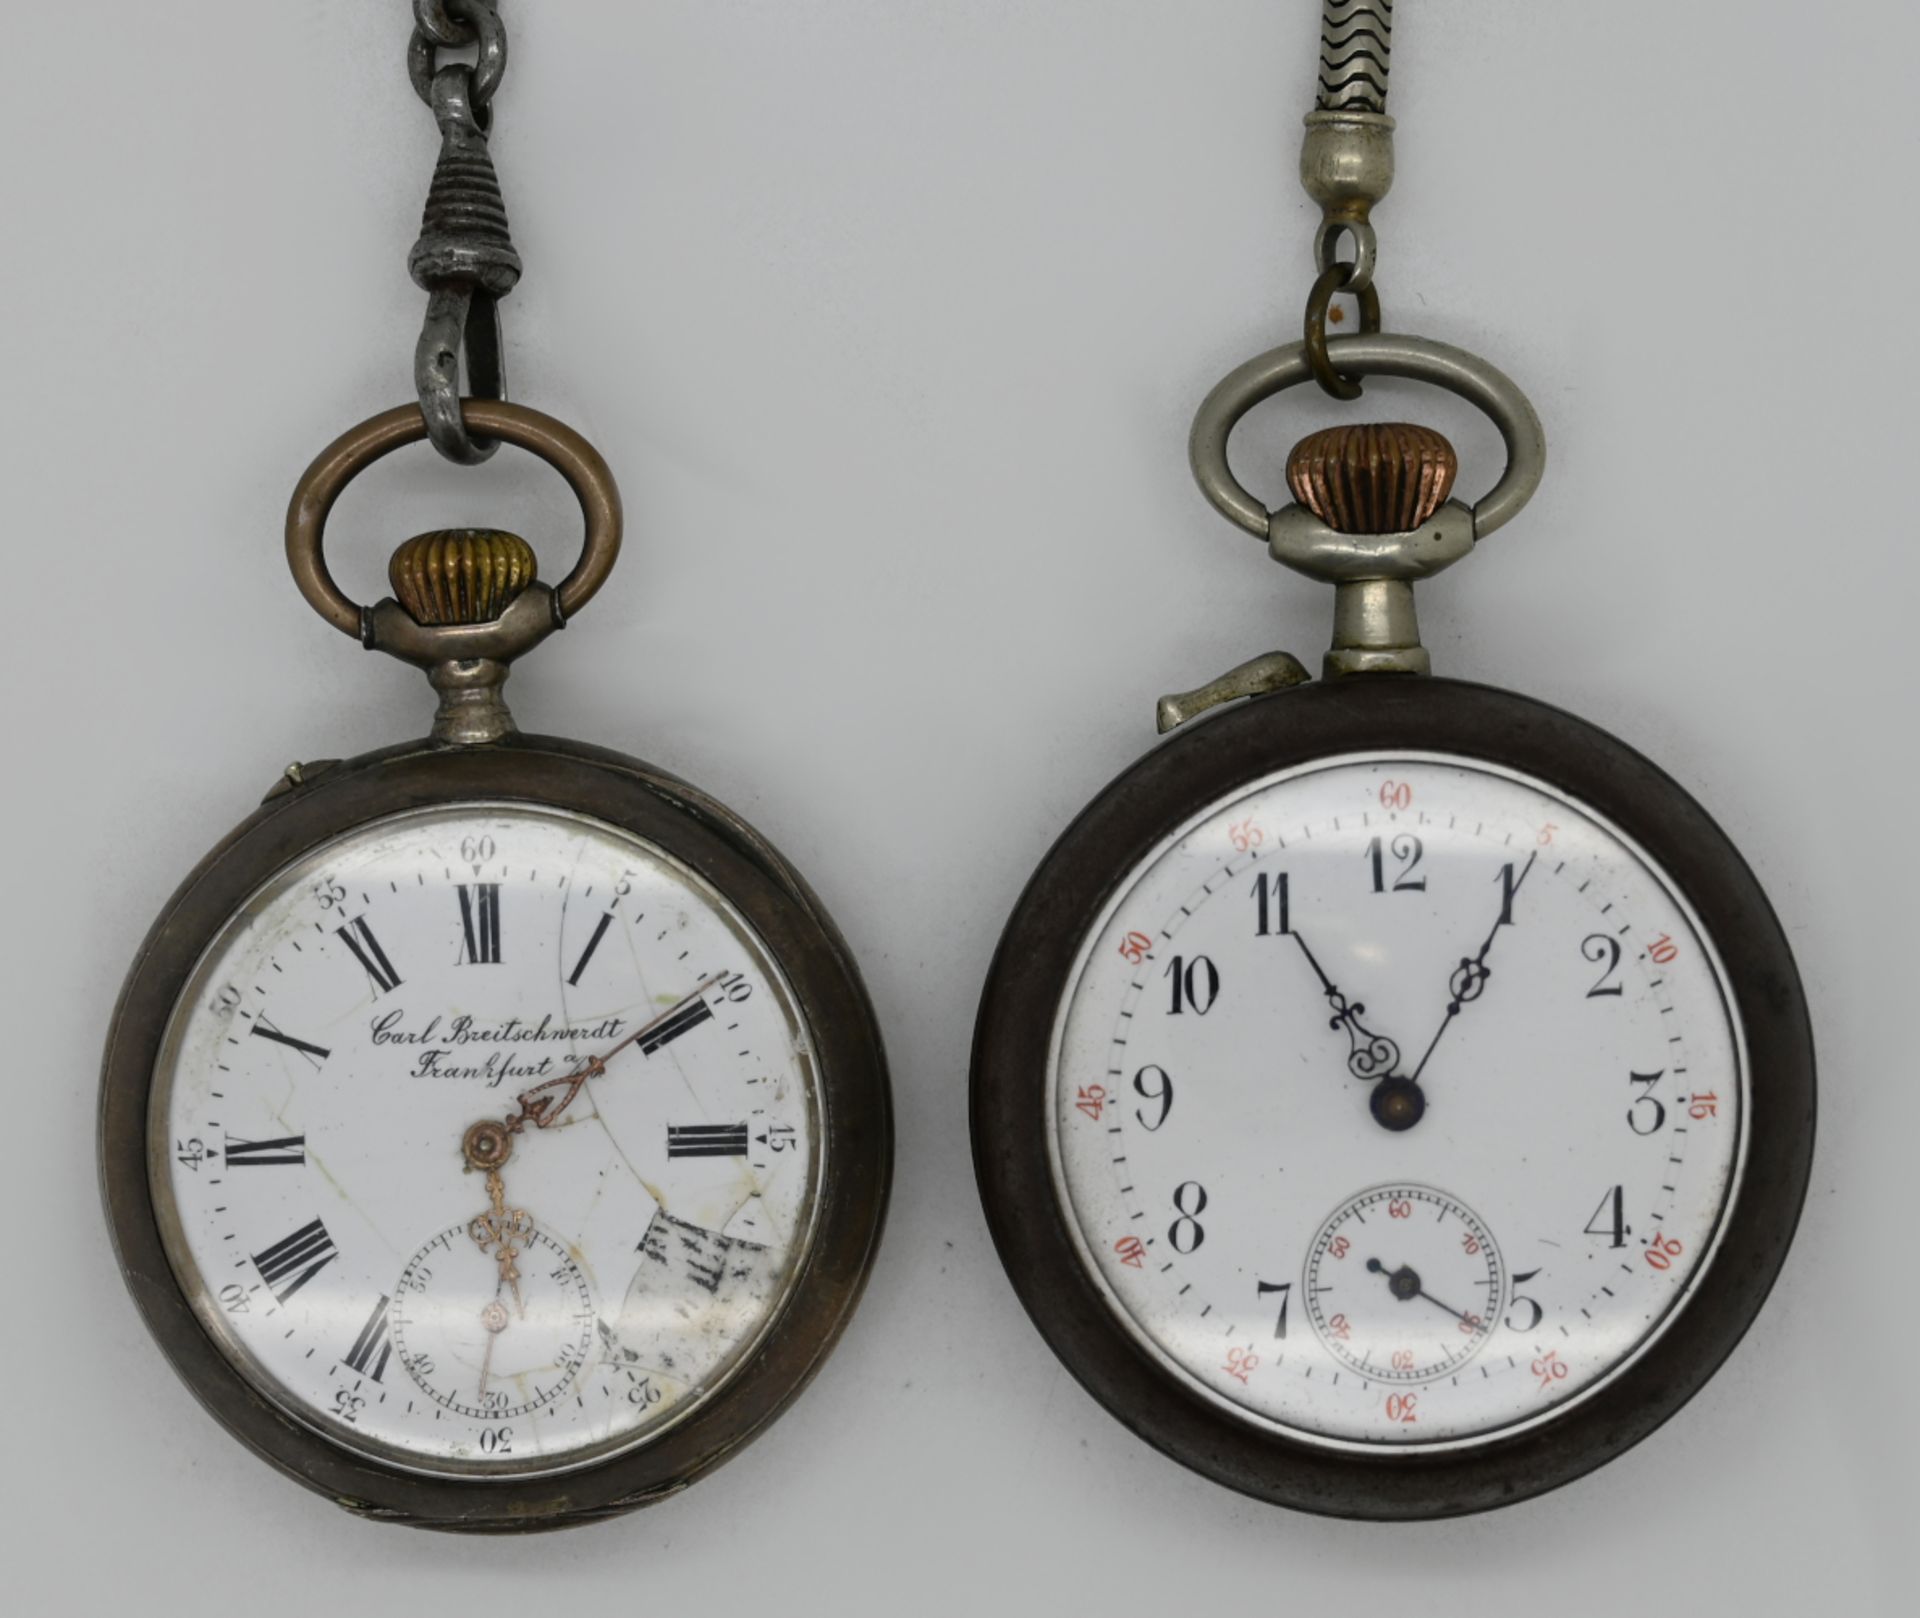 1 Taschenuhr Silber 800/ Metall C. BREITSCHWERDT, 1 Taschenuhr Metall, je Uhrkette, je um 1900, sich